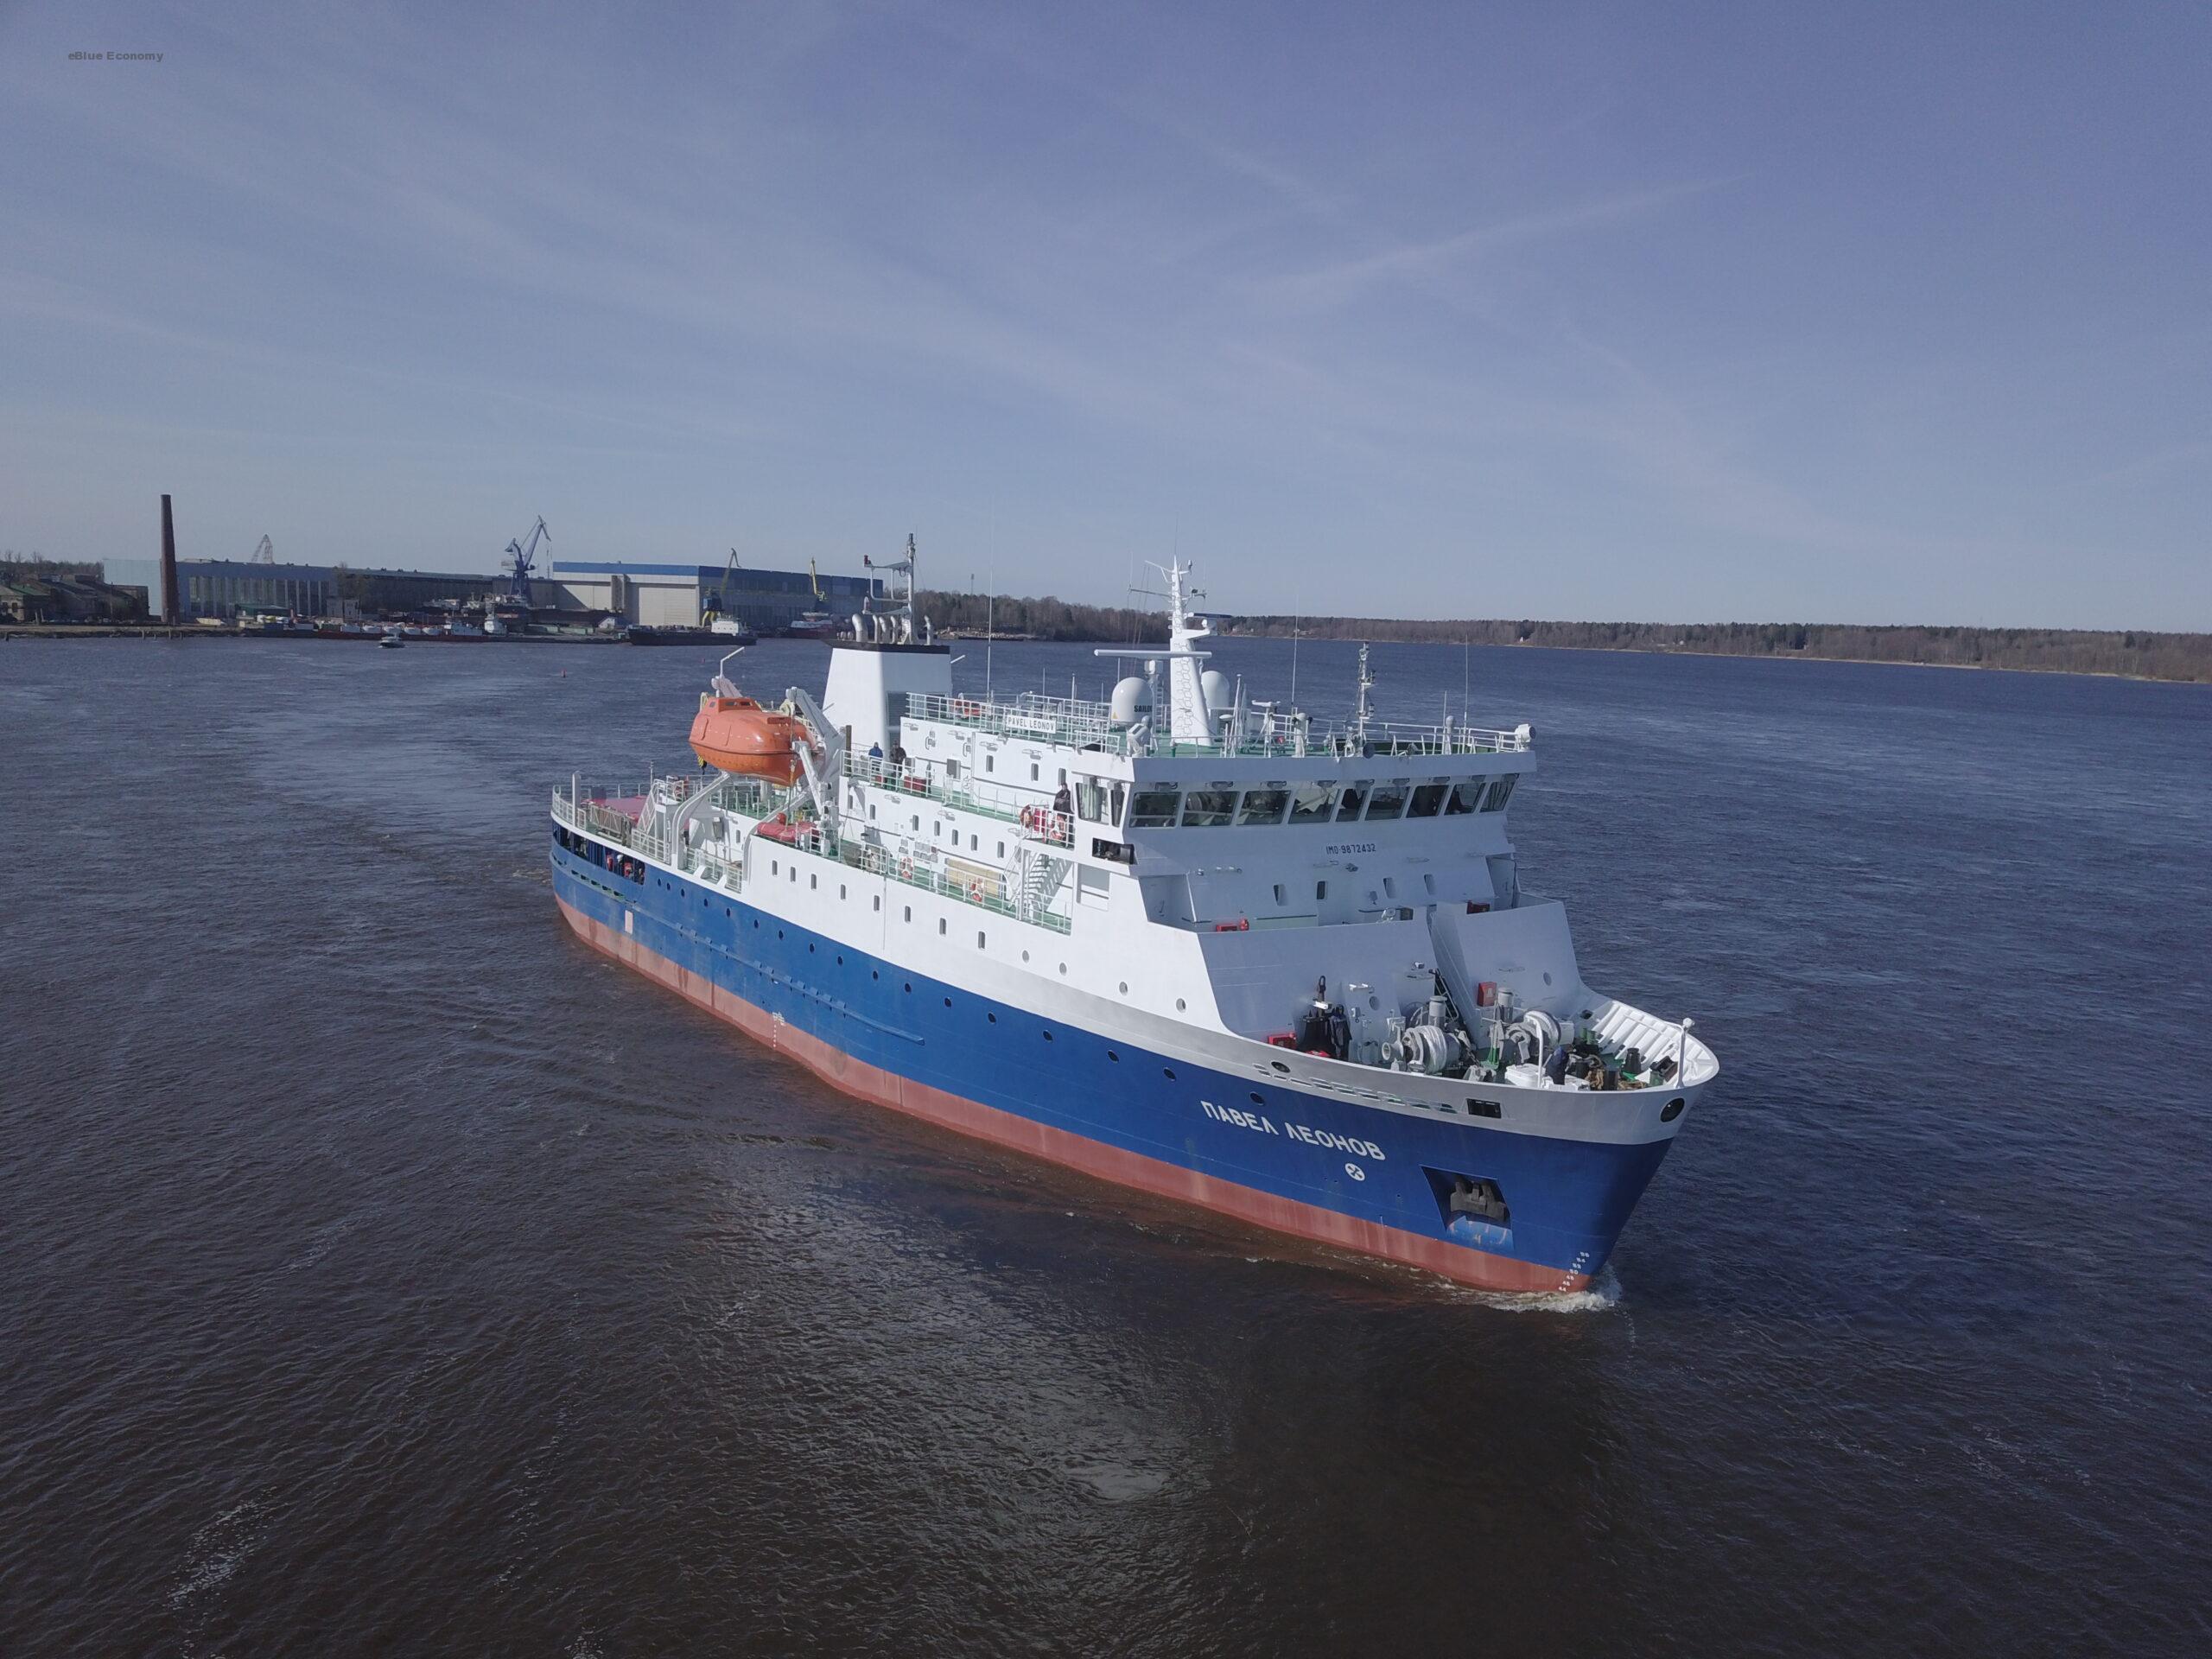 eBlue_economy_Nevsky Shipyard delivers cargo-passenger vessel of Project PV22, Pavel Leonov